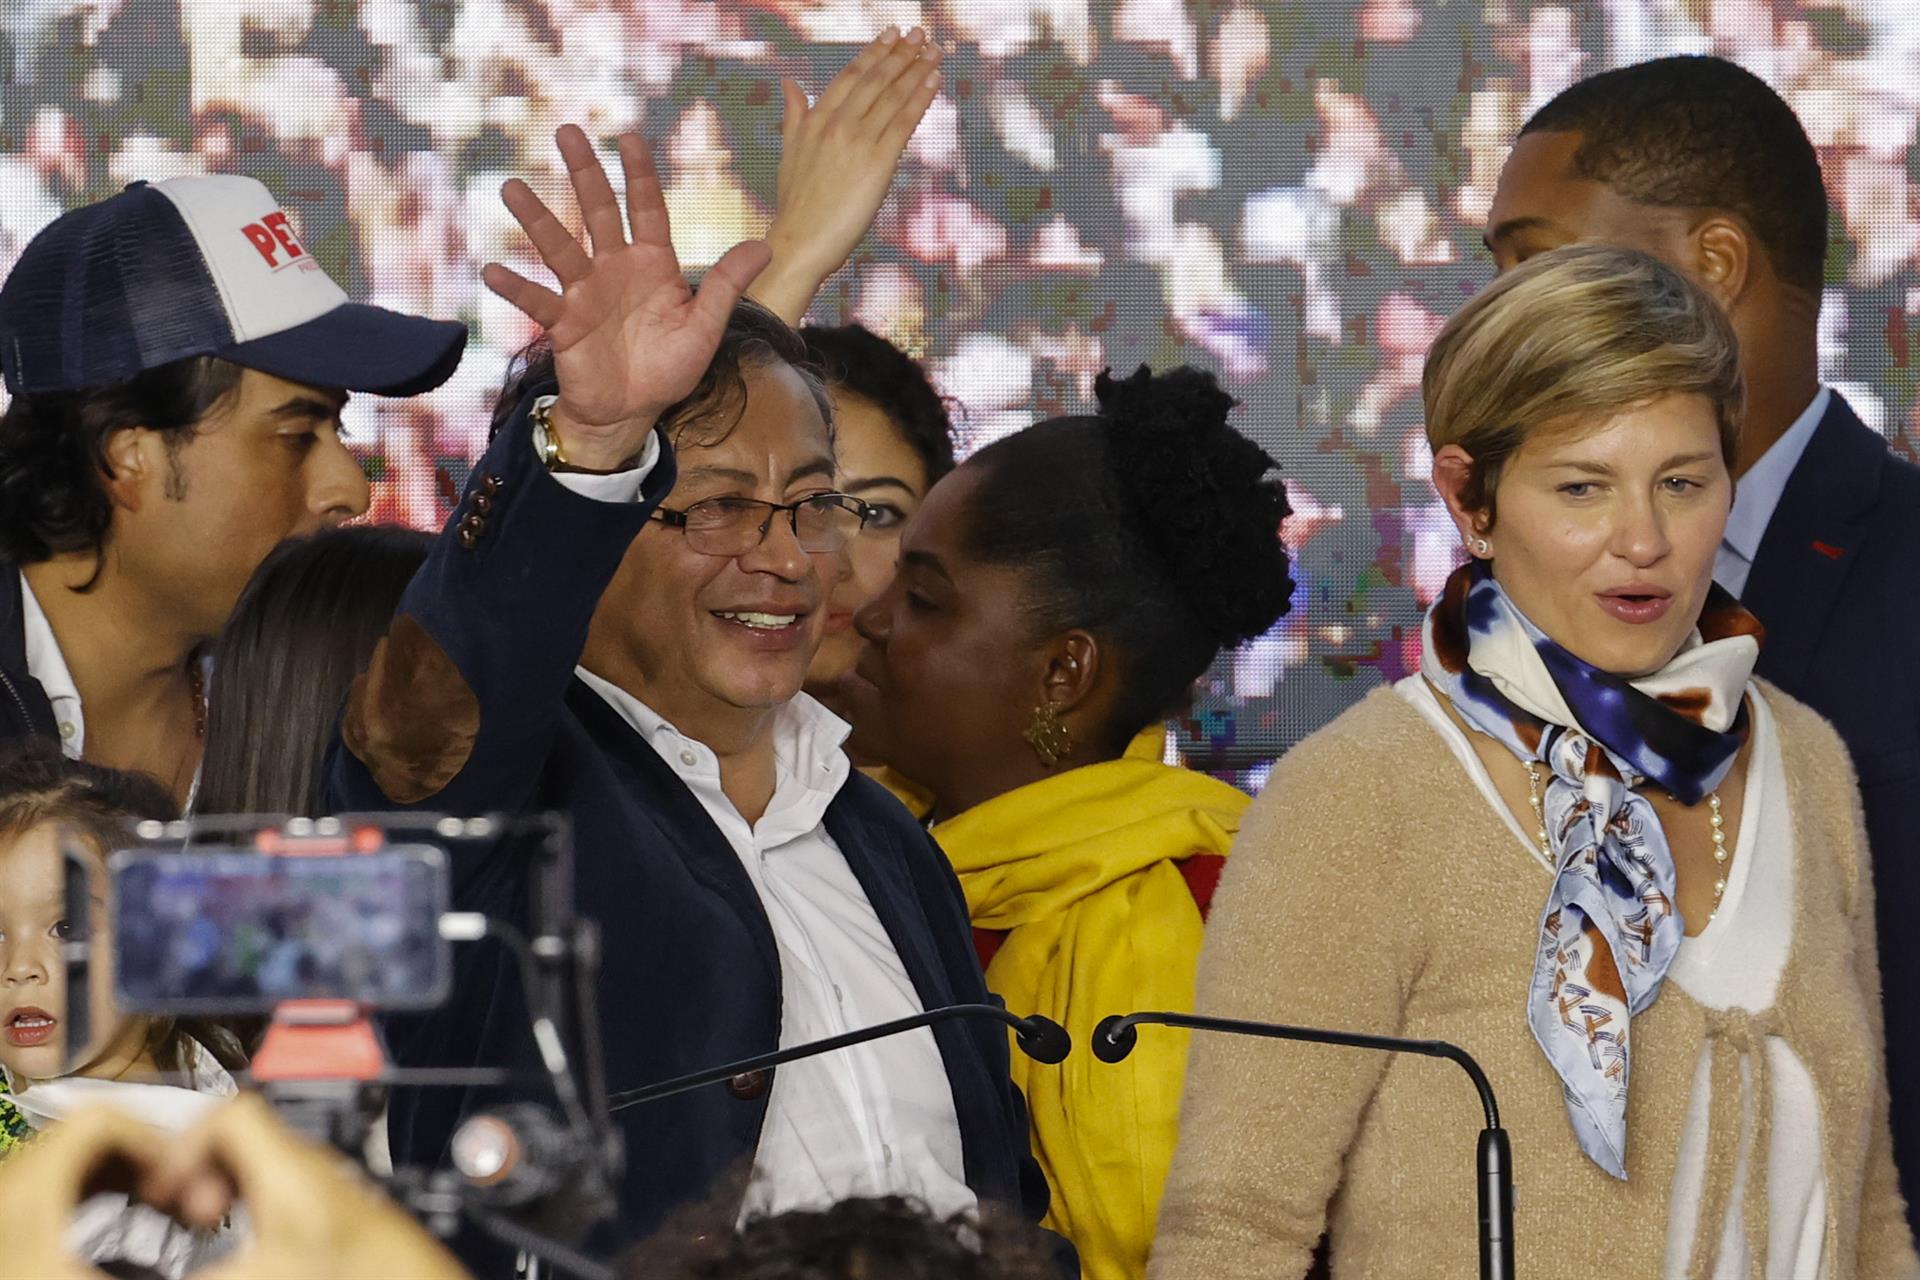 Gustavo Petro tras victoria en primera vuelta de las presidenciales colombianas. Foto: EFE